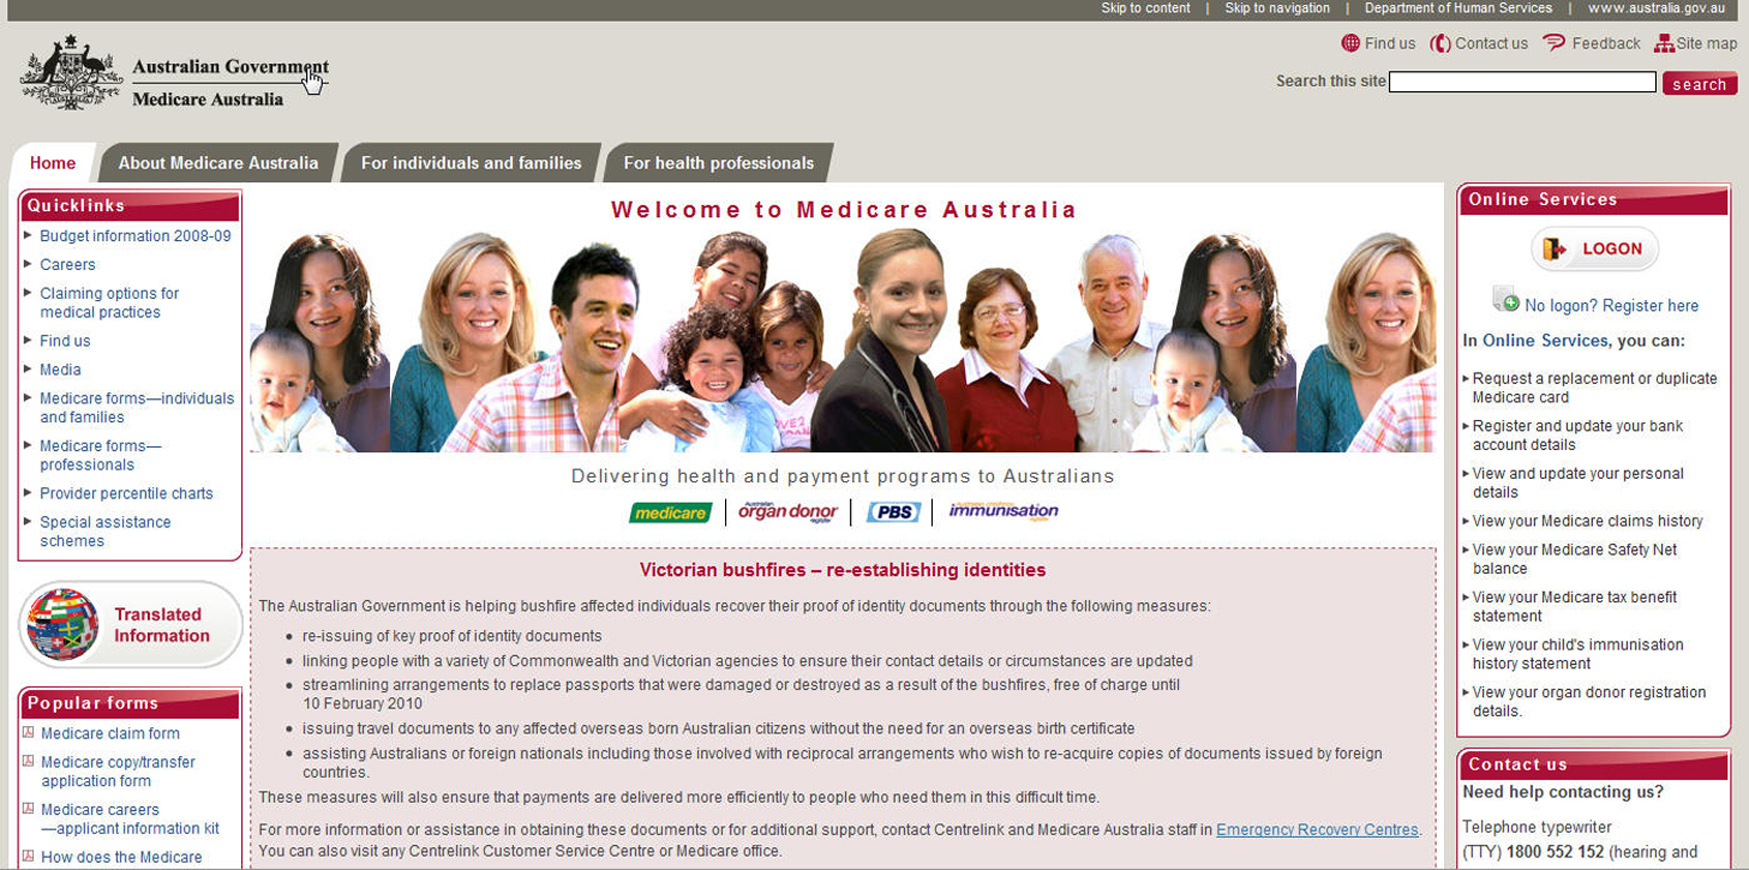 澳洲国民保健系统Medicare官方网站首页。